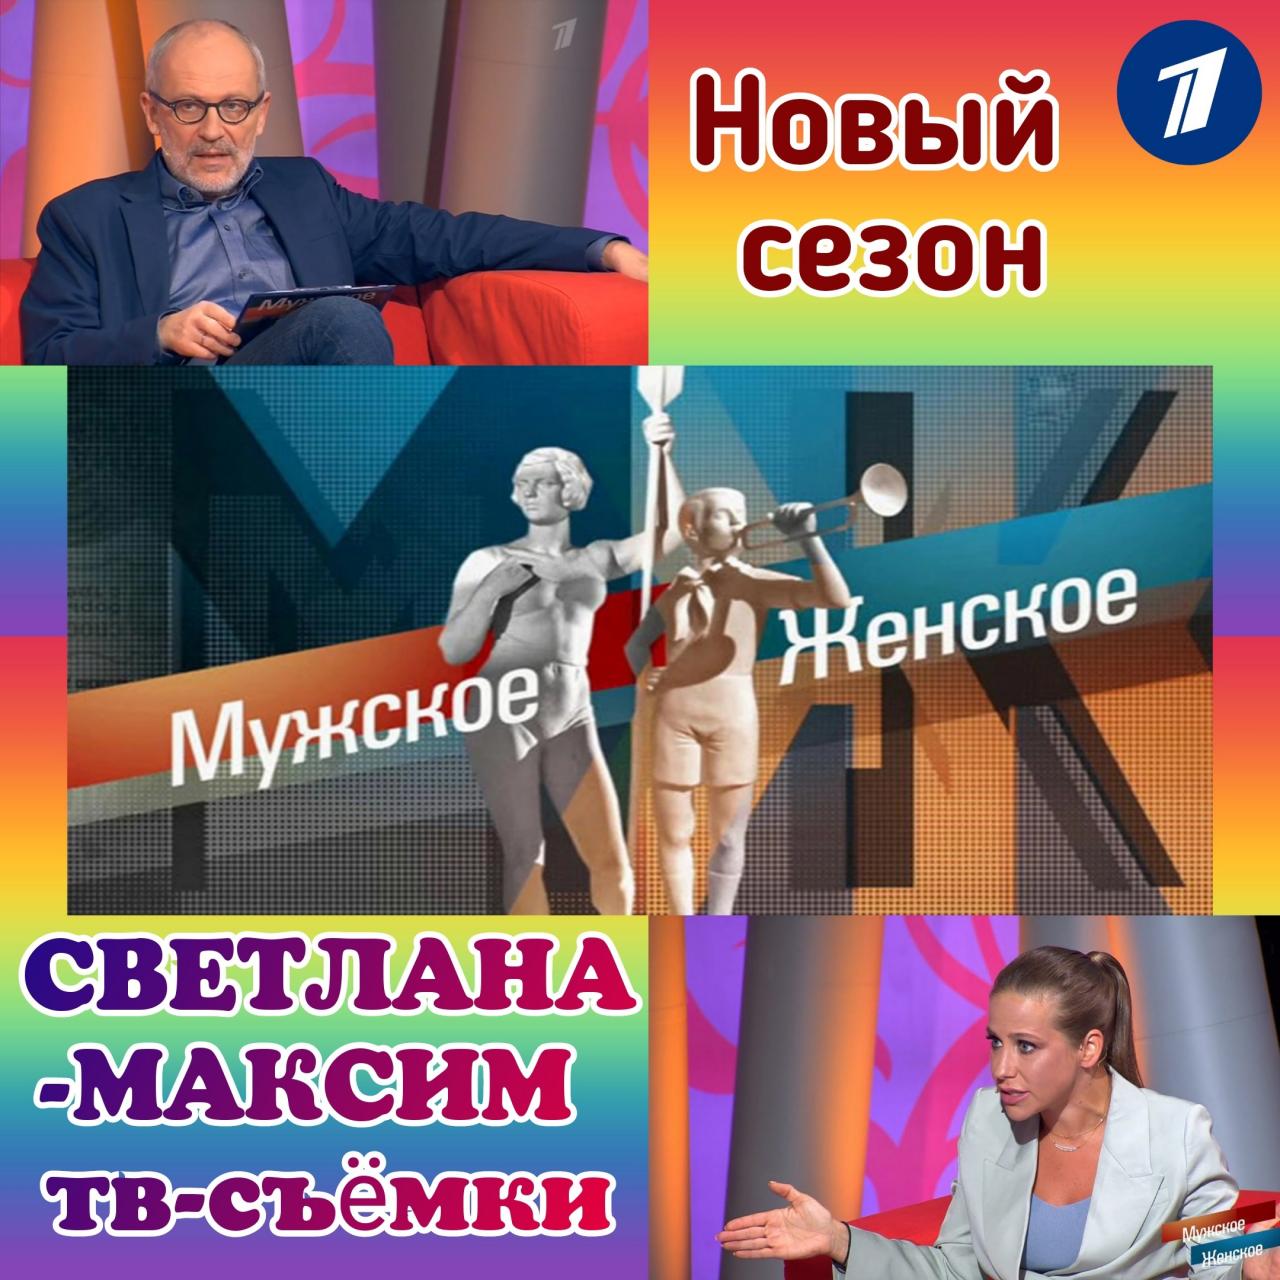 19, 20, 21 сентября ток-шоу "МУЖСКОЕ/ЖЕНСКОЕ".